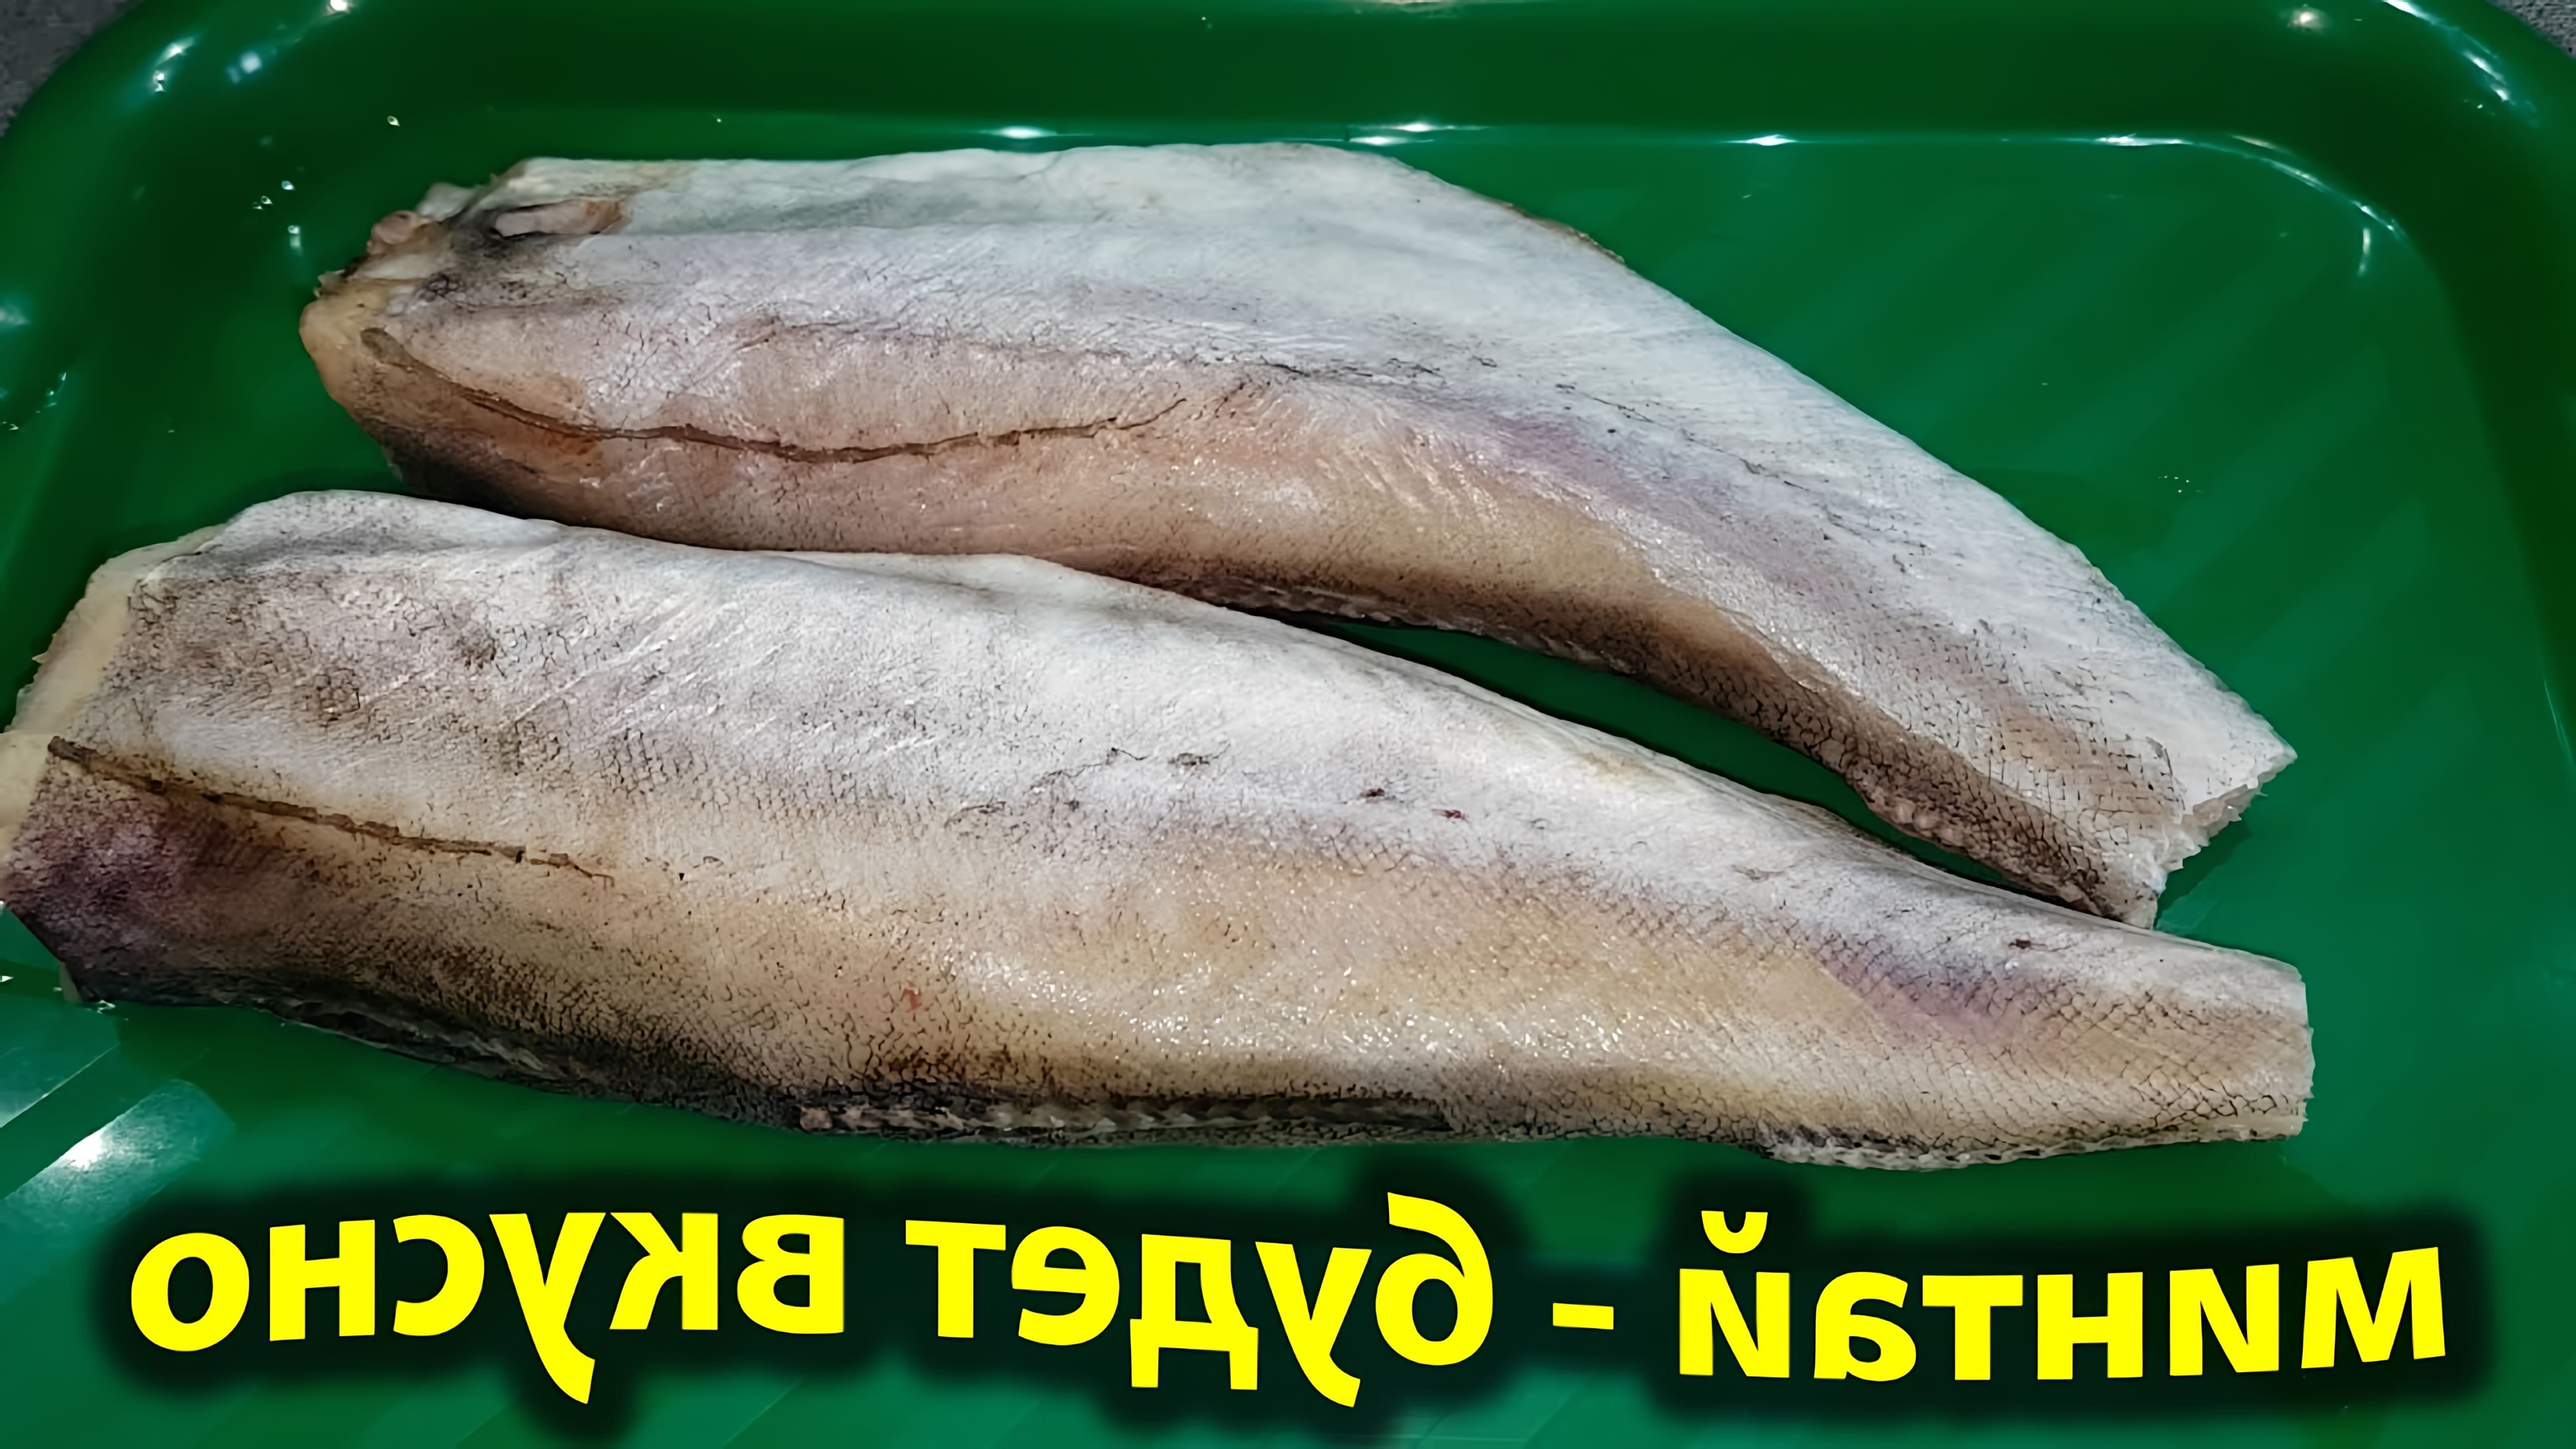 В этом видео демонстрируется процесс приготовления вкусного блюда из дешевой рыбы - минтая